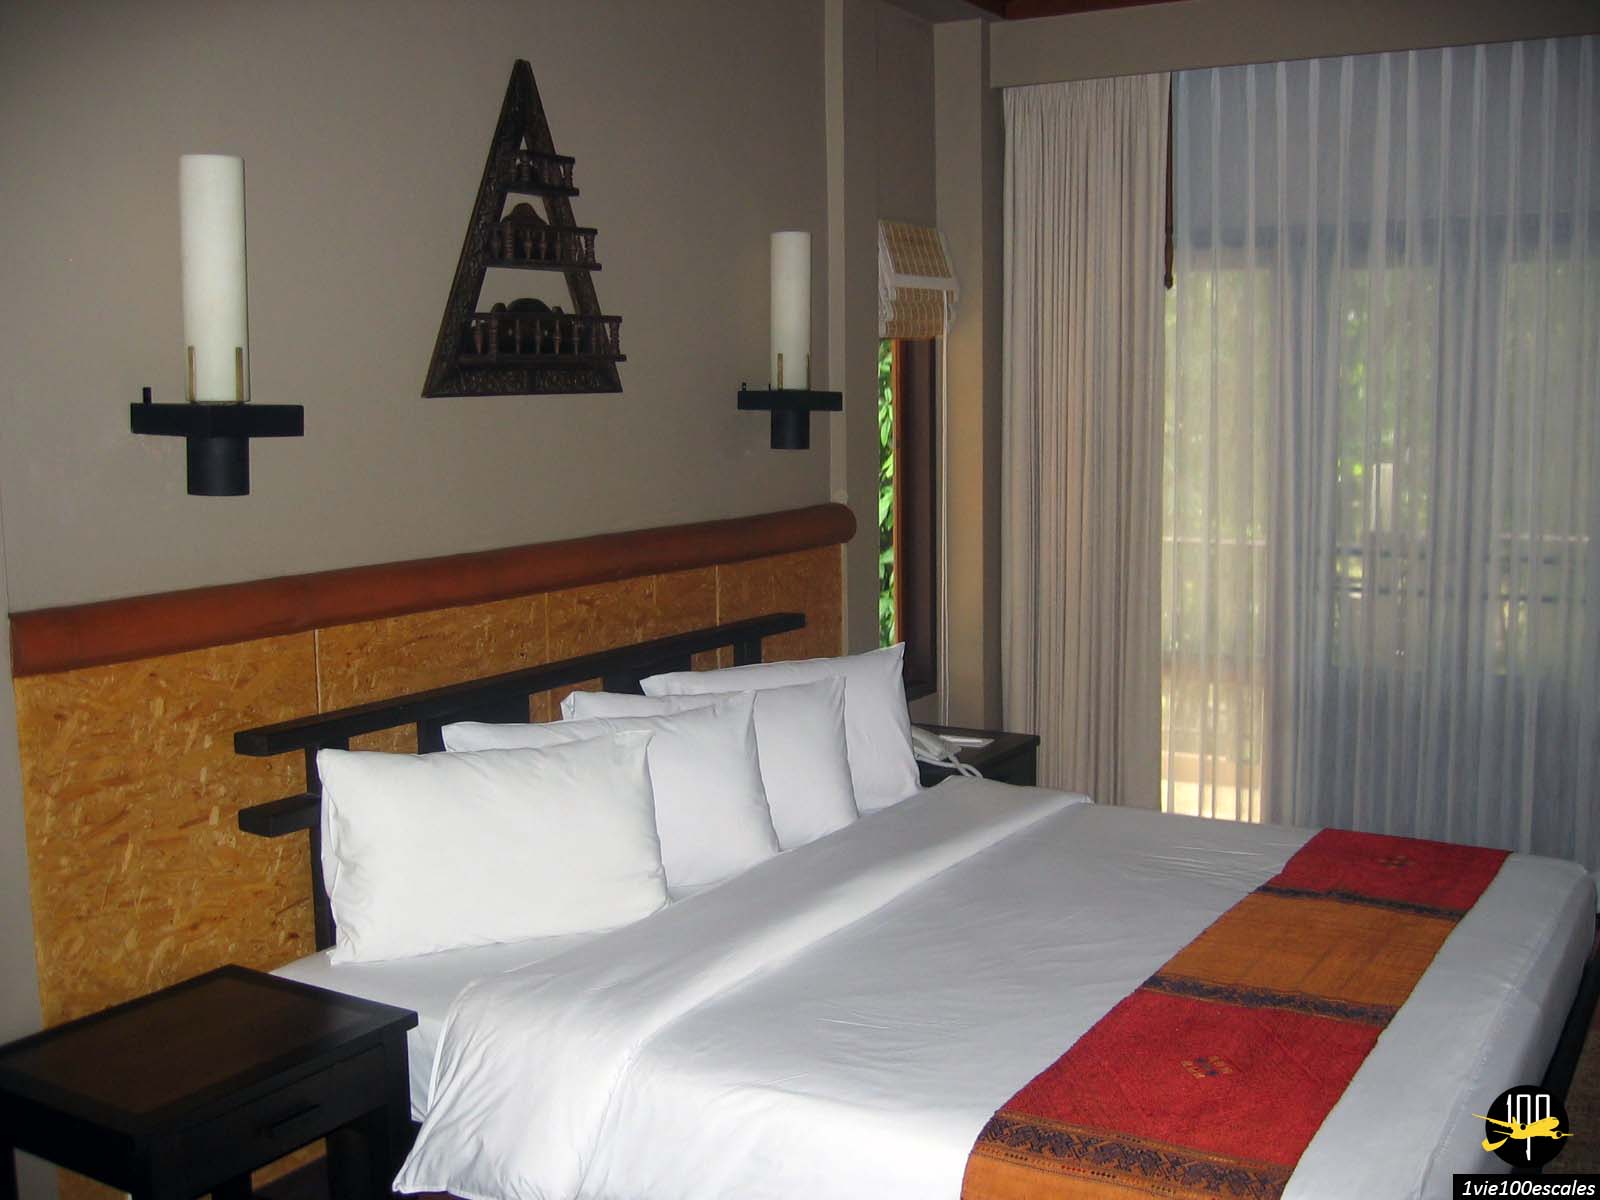 La belle chambre traditionnelle de style thaïlandais de l'hôtel Khaolak Merlin Resort